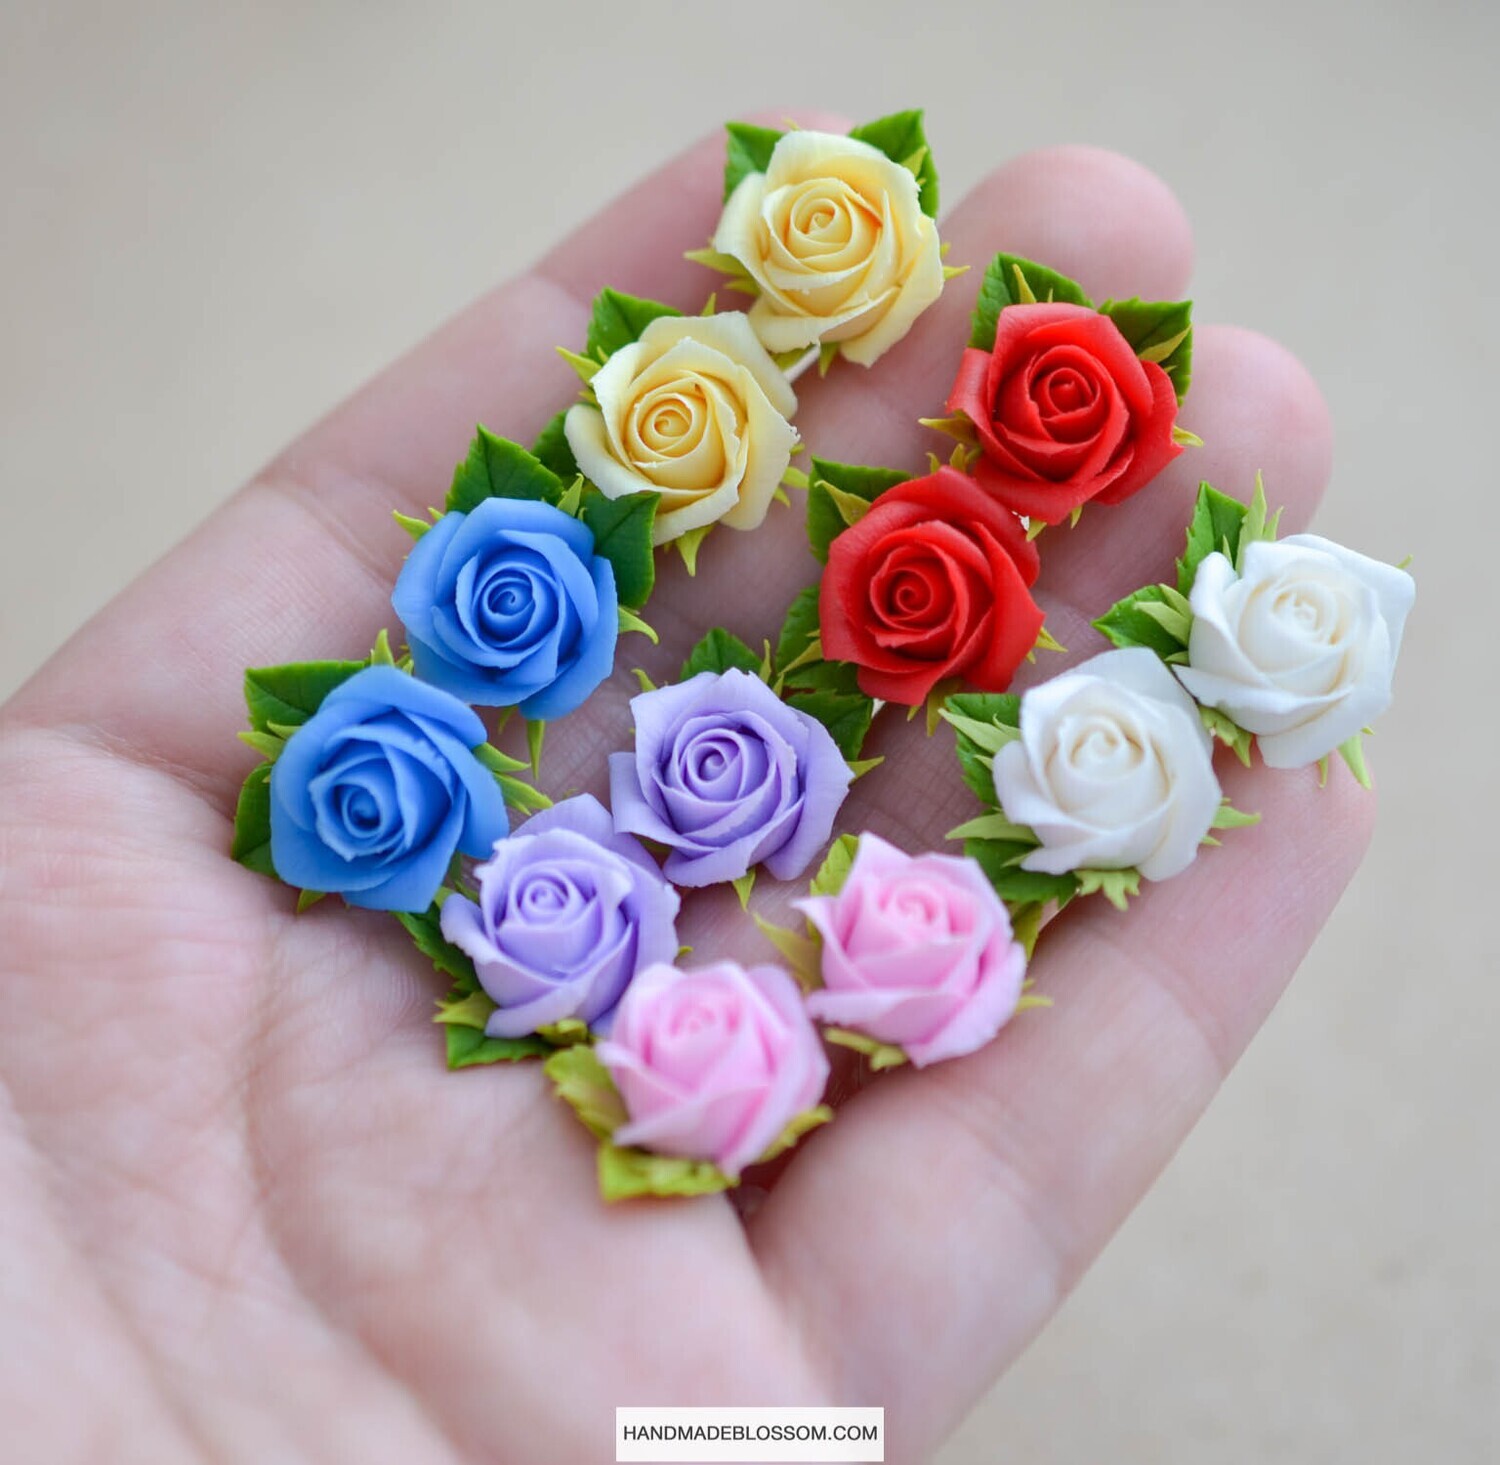 Rose stud earrings, Flower studs jewelry